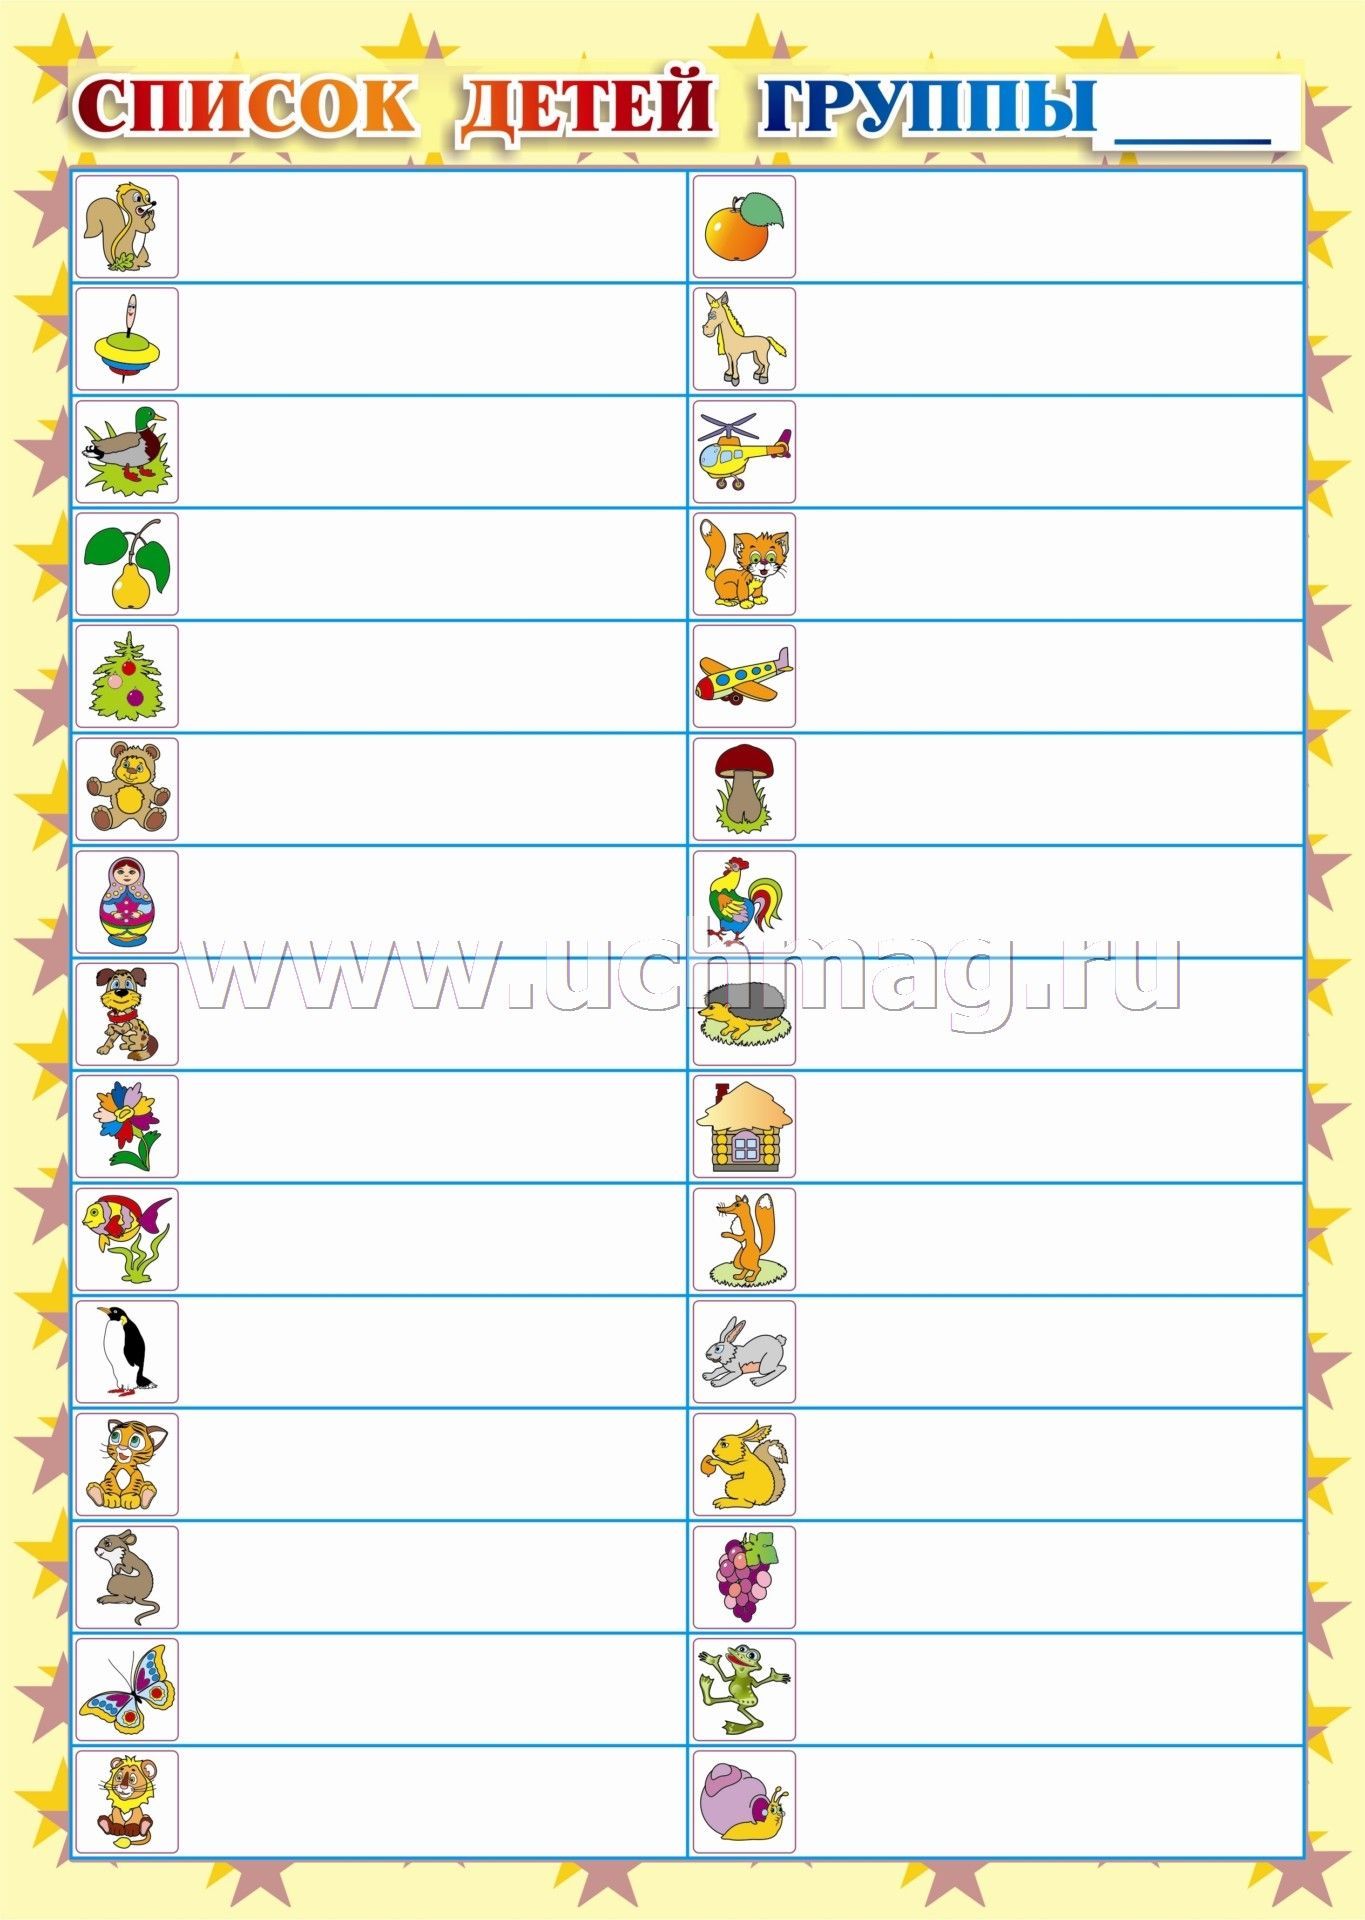 Список детей на шкафчики в детском саду шаблоны пустые для распечатывания